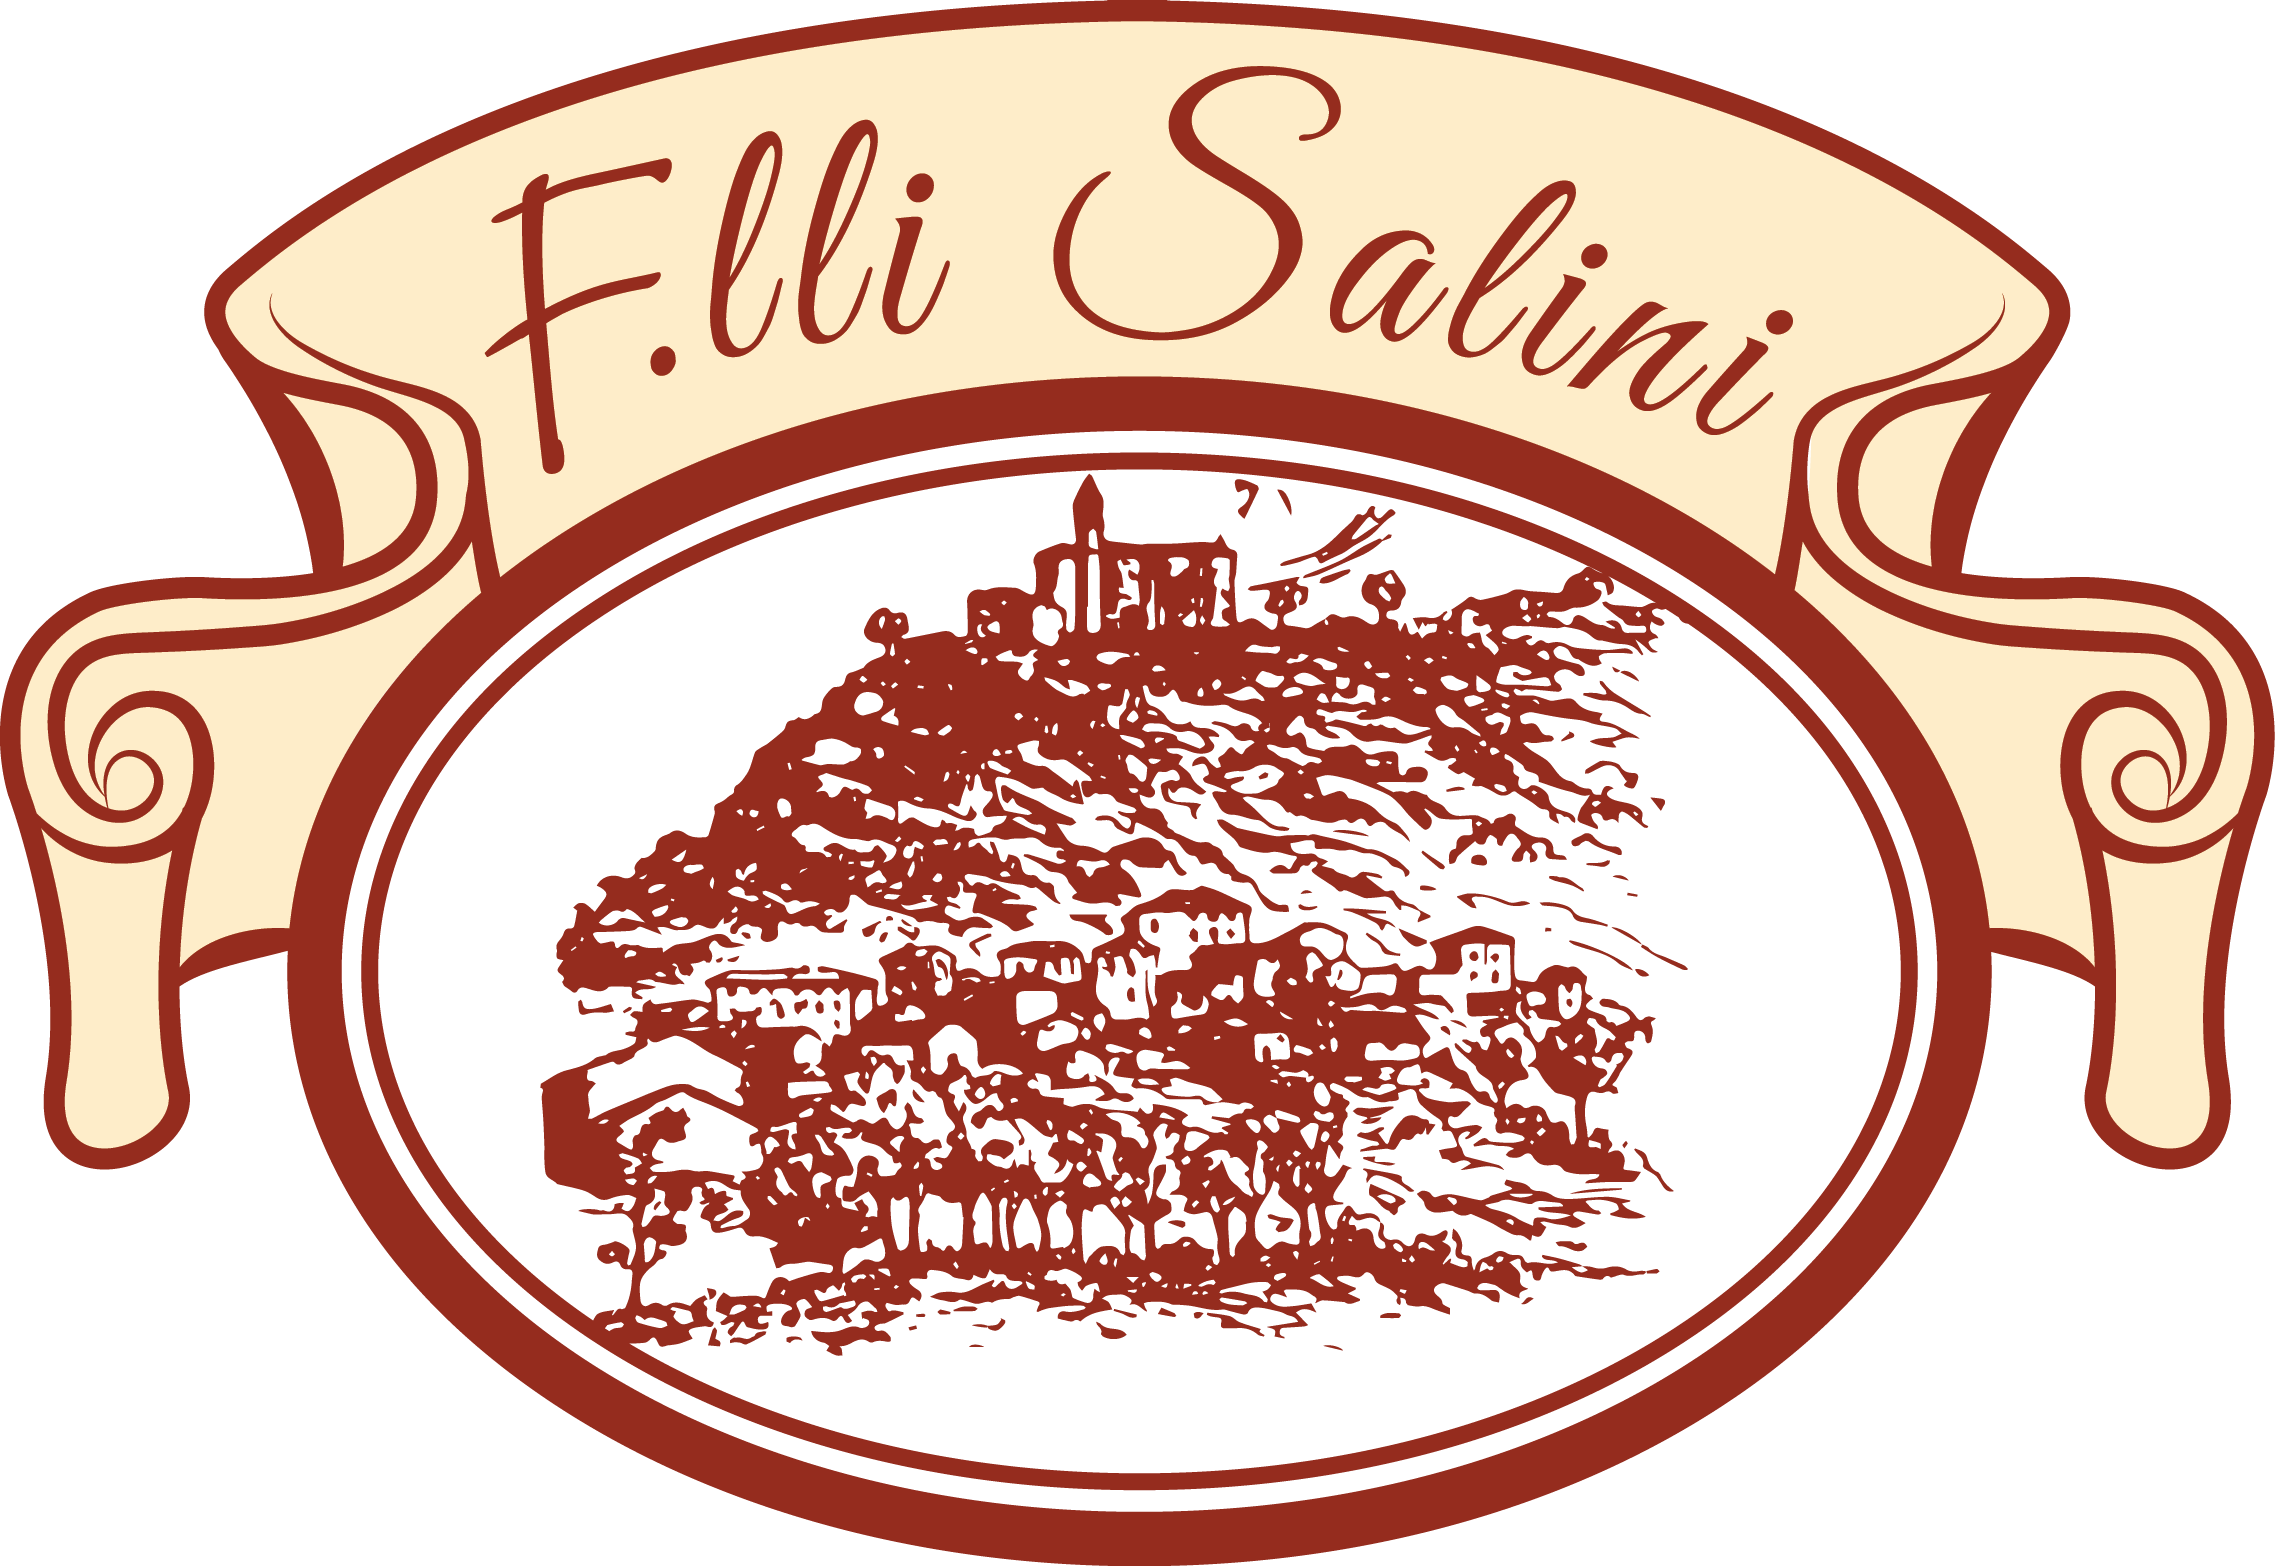 F.lli Salini - Salumificio, Ristorante e Albergo dal 1820